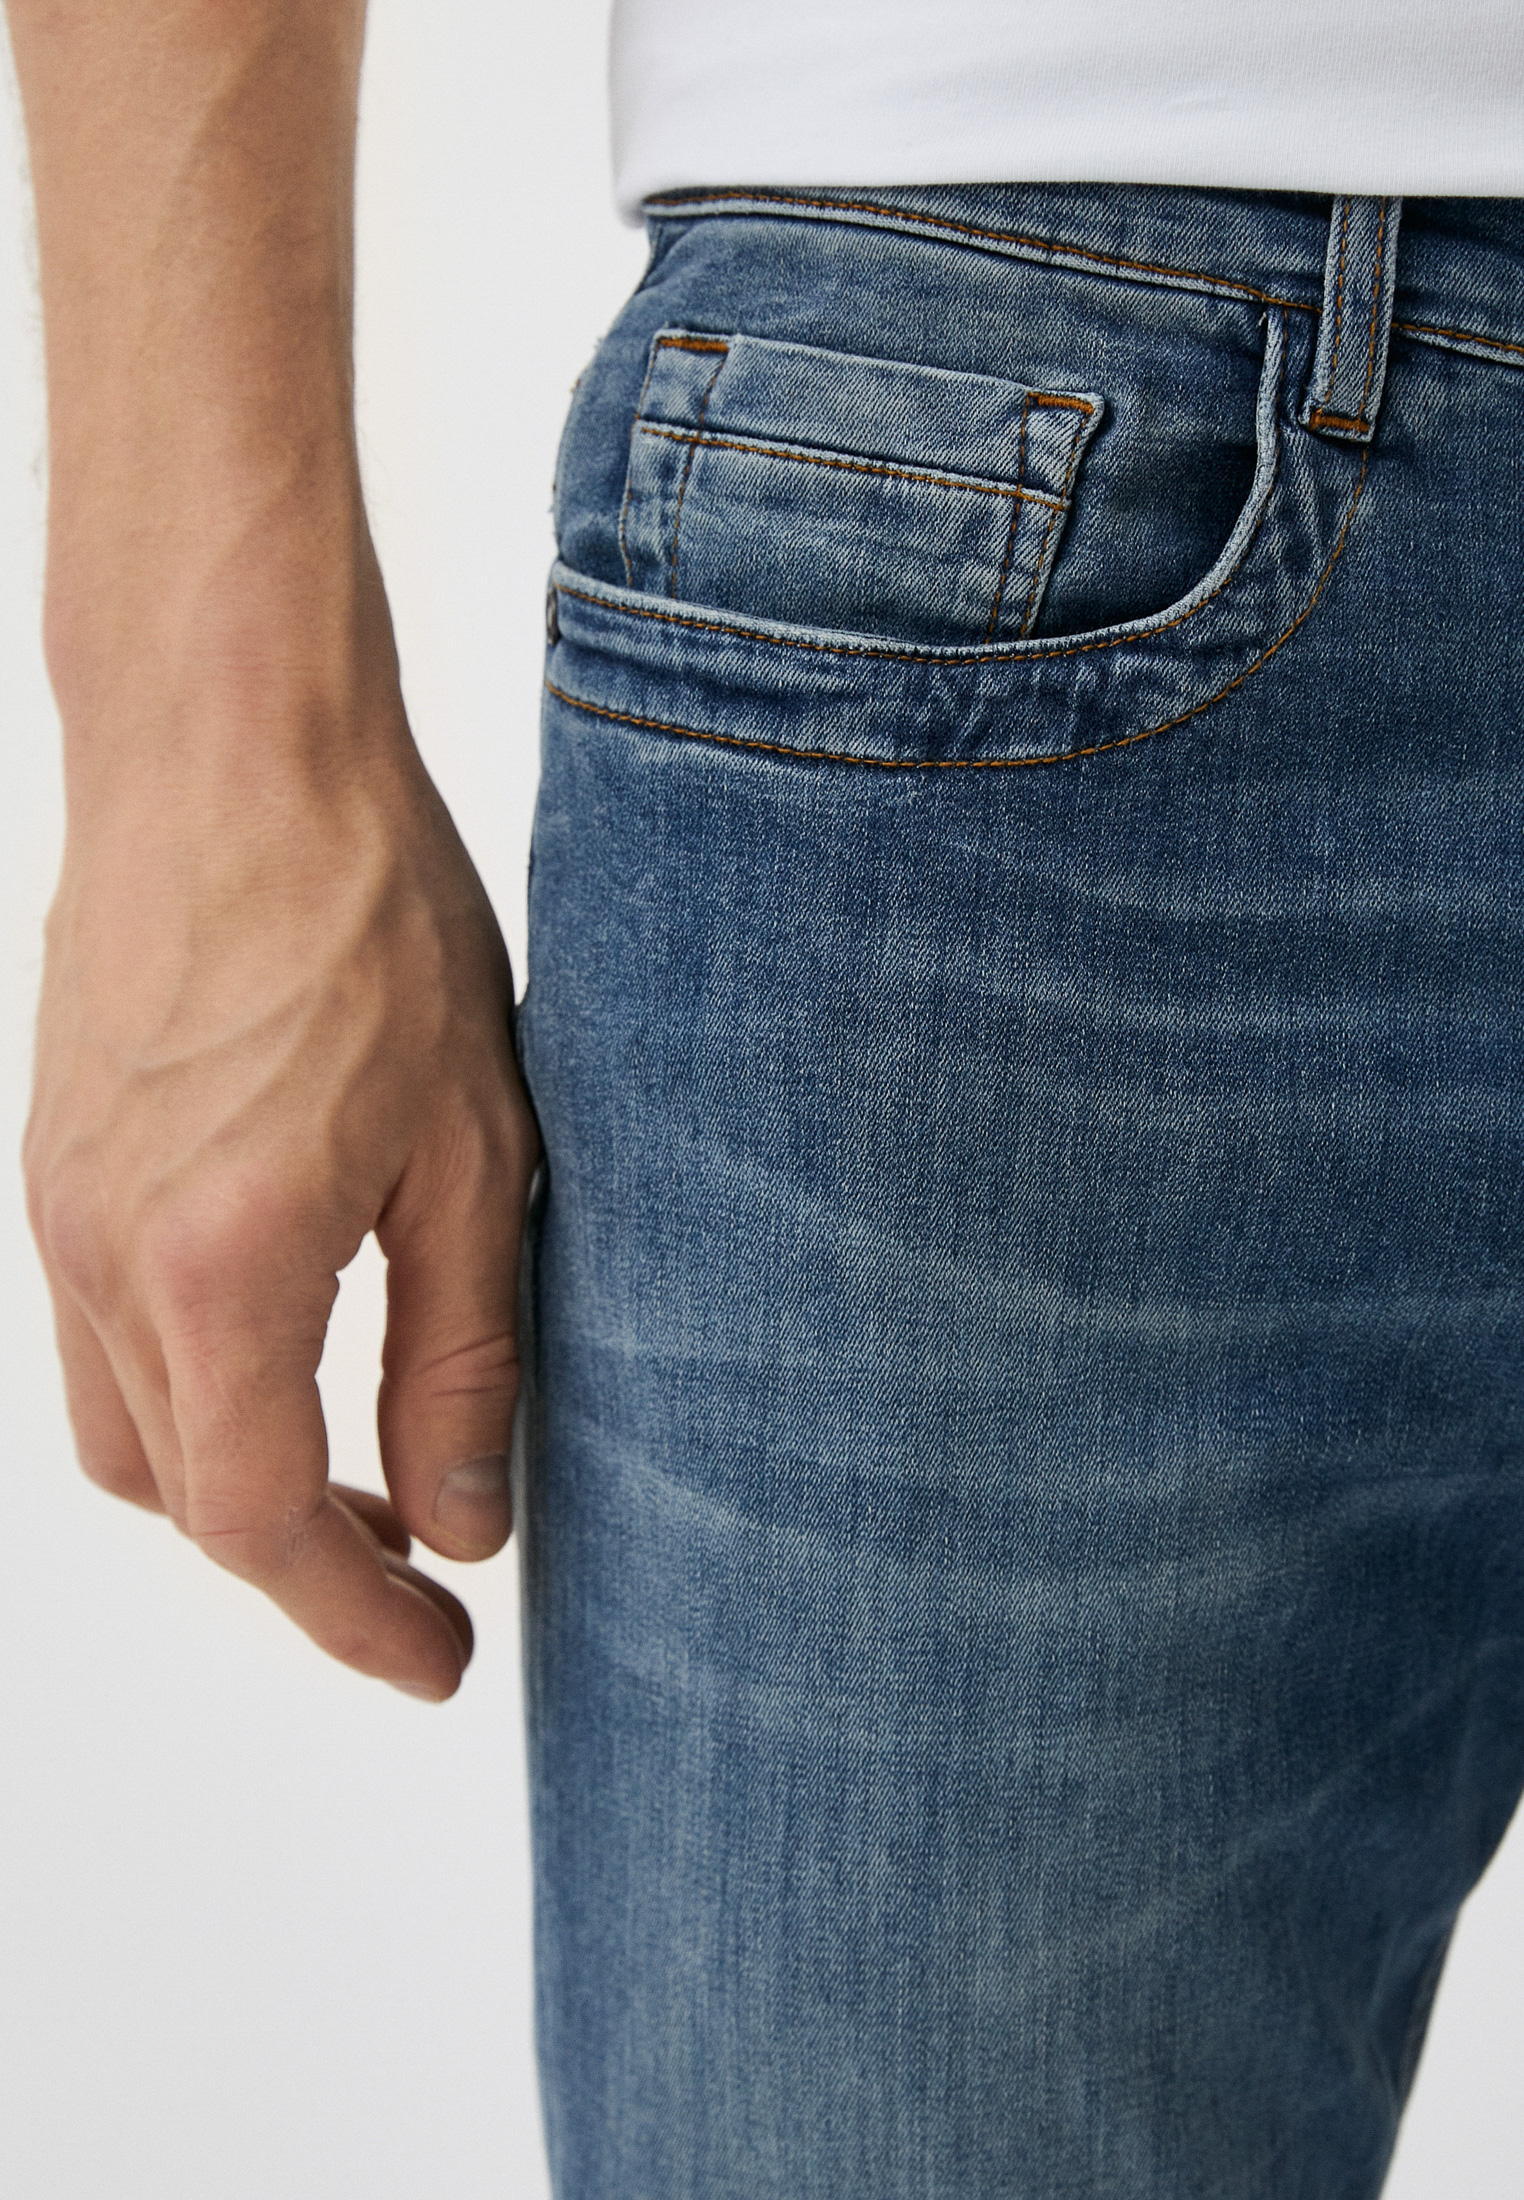 Мужские зауженные джинсы Bikkembergs (Биккембергс) C Q 101 1C S 3511: изображение 4